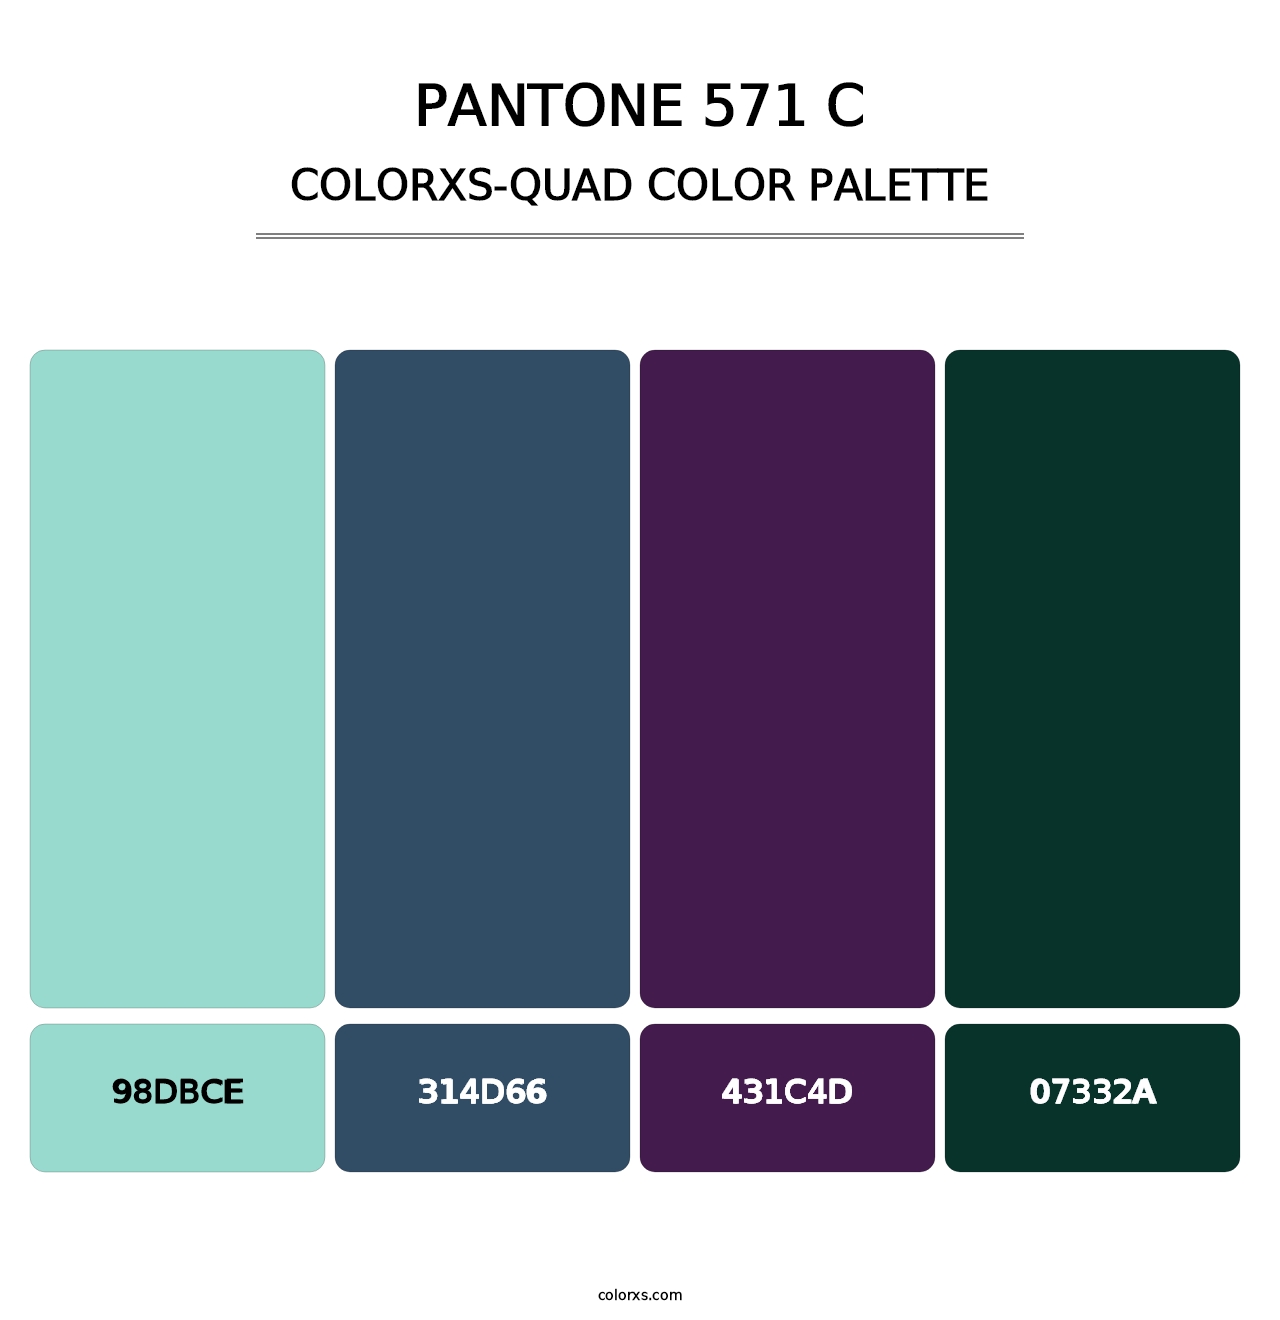 PANTONE 571 C - Colorxs Quad Palette